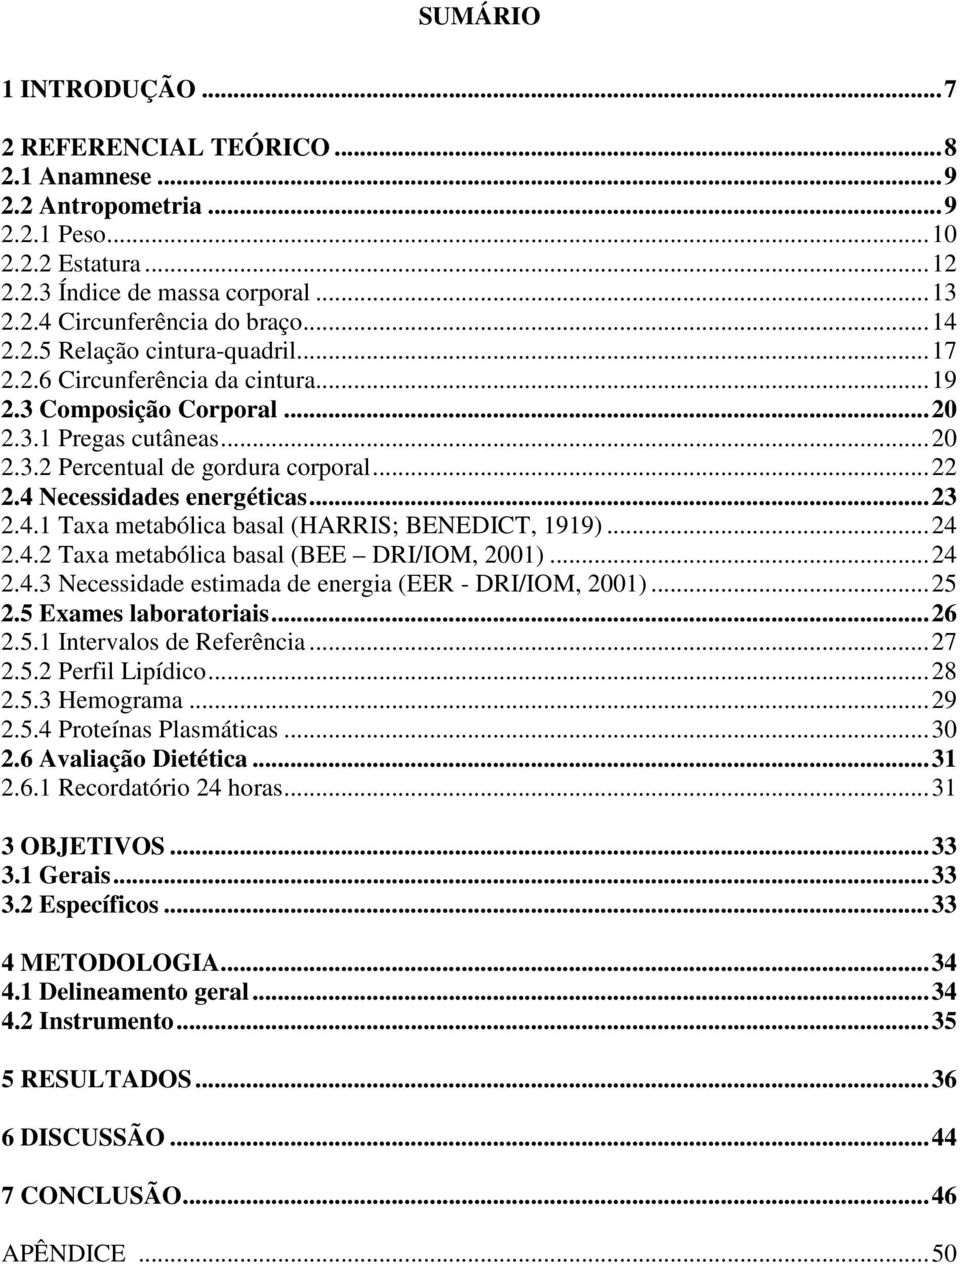 ..23 2.4.1 Taxa metabólica basal (HARRIS; BENEDICT, 1919)...24 2.4.2 Taxa metabólica basal (BEE DRI/IOM, 2001)...24 2.4.3 Necessidade estimada de energia (EER - DRI/IOM, 2001)...25 2.